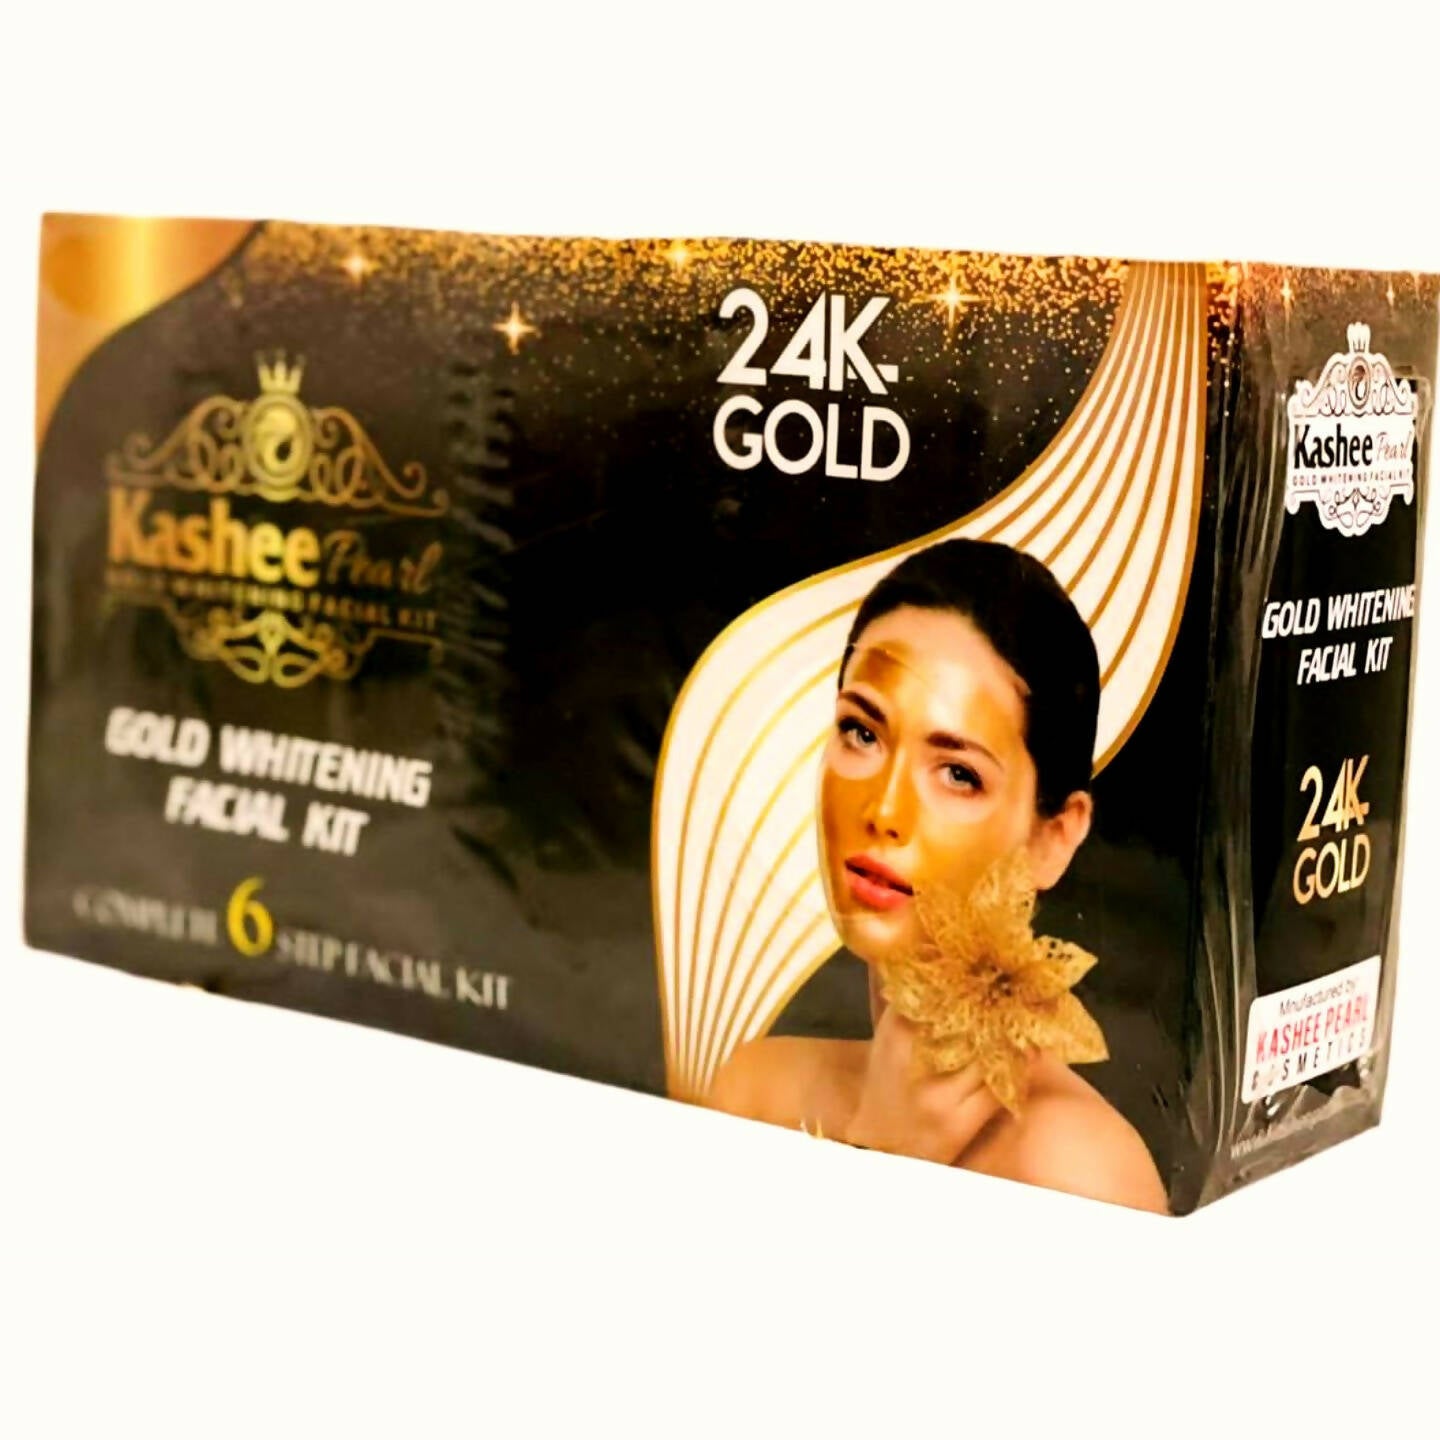 Kashee Pearl 24k Gold whitening Facial kit